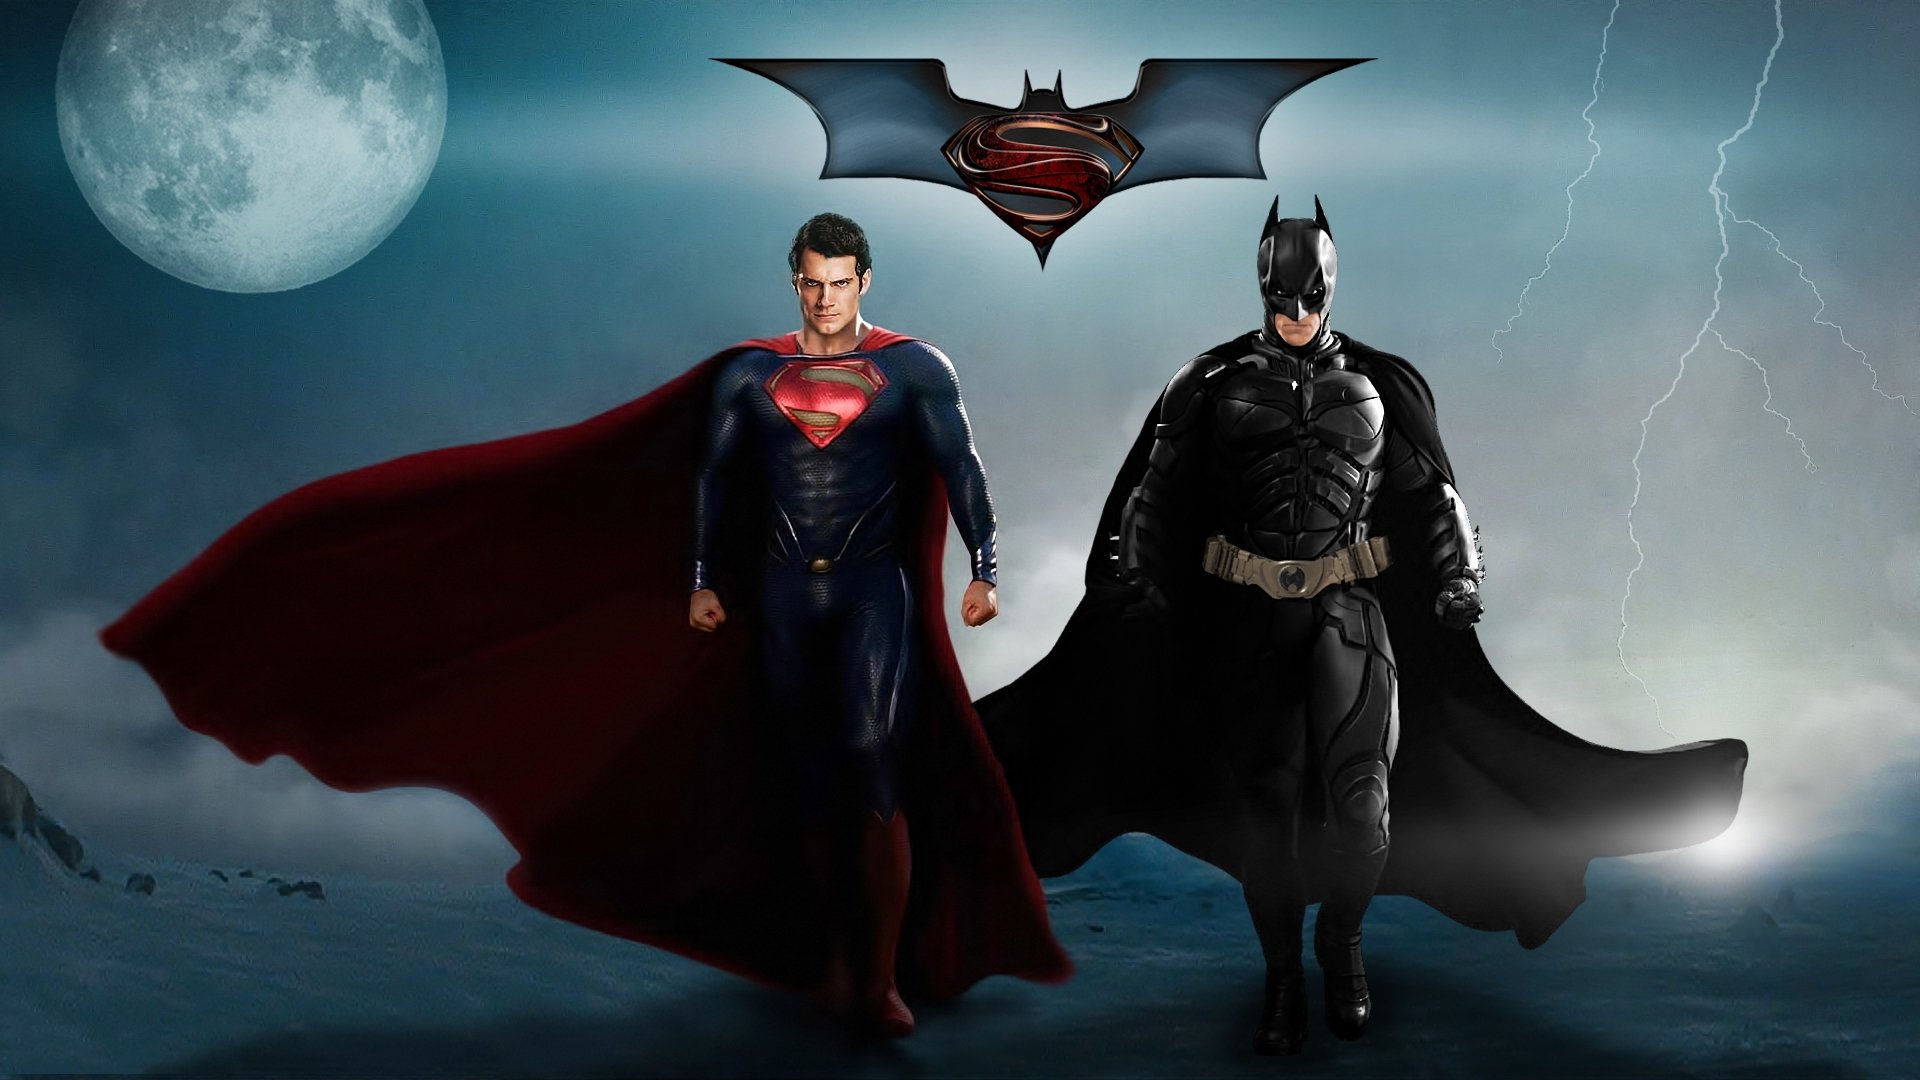 BATMAN v SUPERMAN adventure action dc comics d c superman batman dark